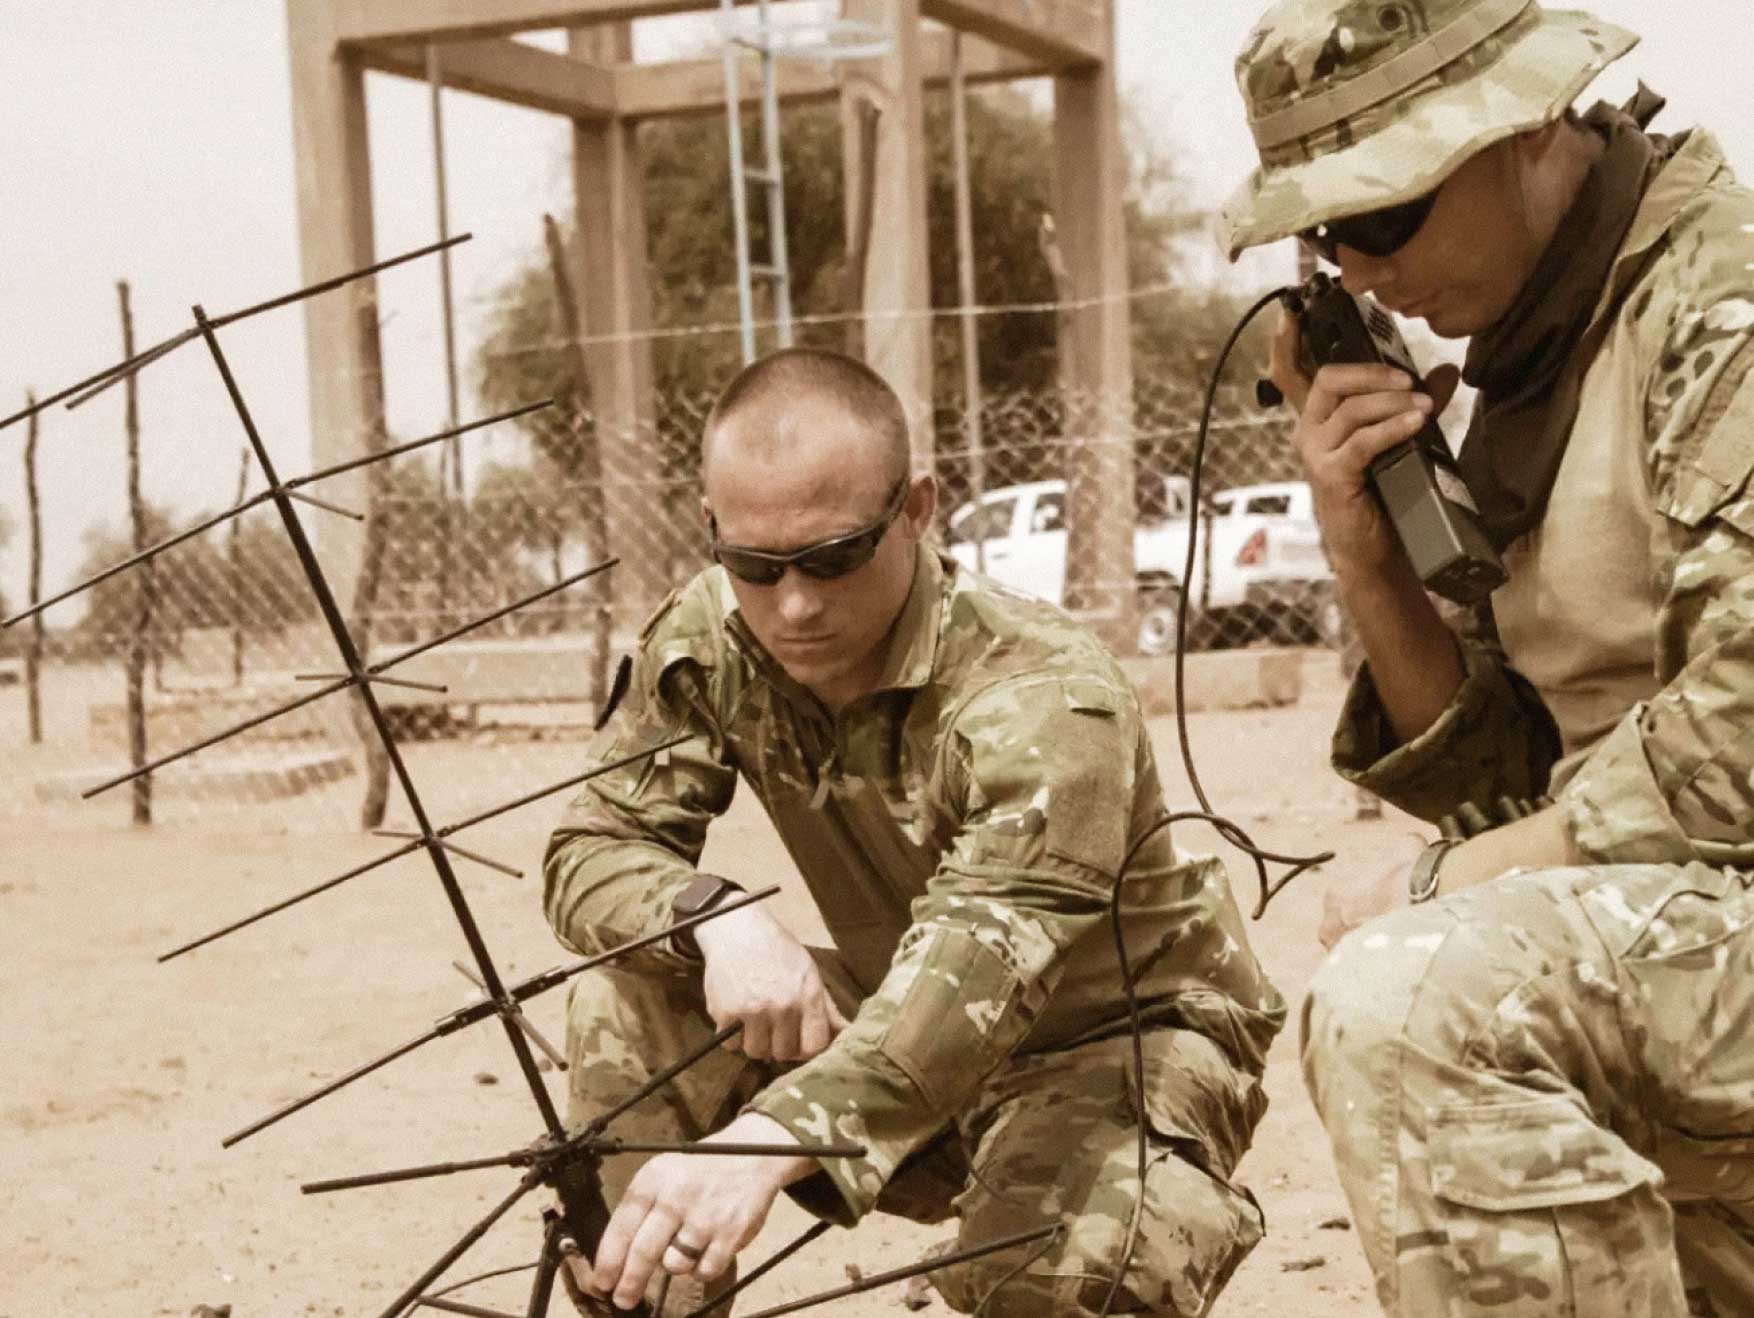 Dos Soldados de Psychological Operations arrodillados en la arena instalando tecnología de comunicaciones